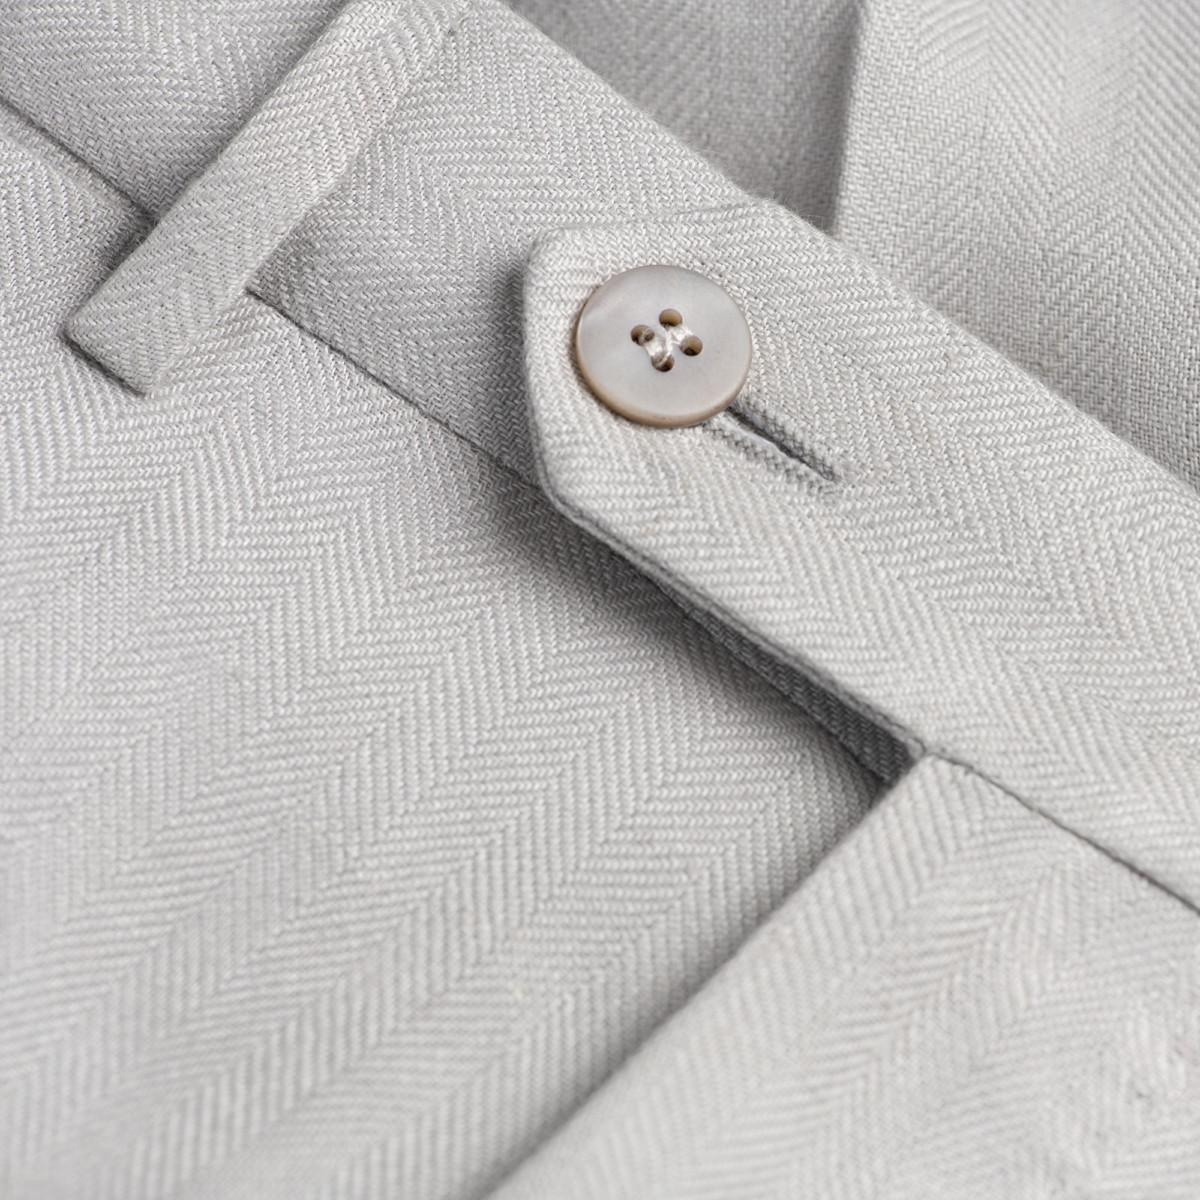 Pantalone Brezza 100% capri for man linen light grey trouser detail